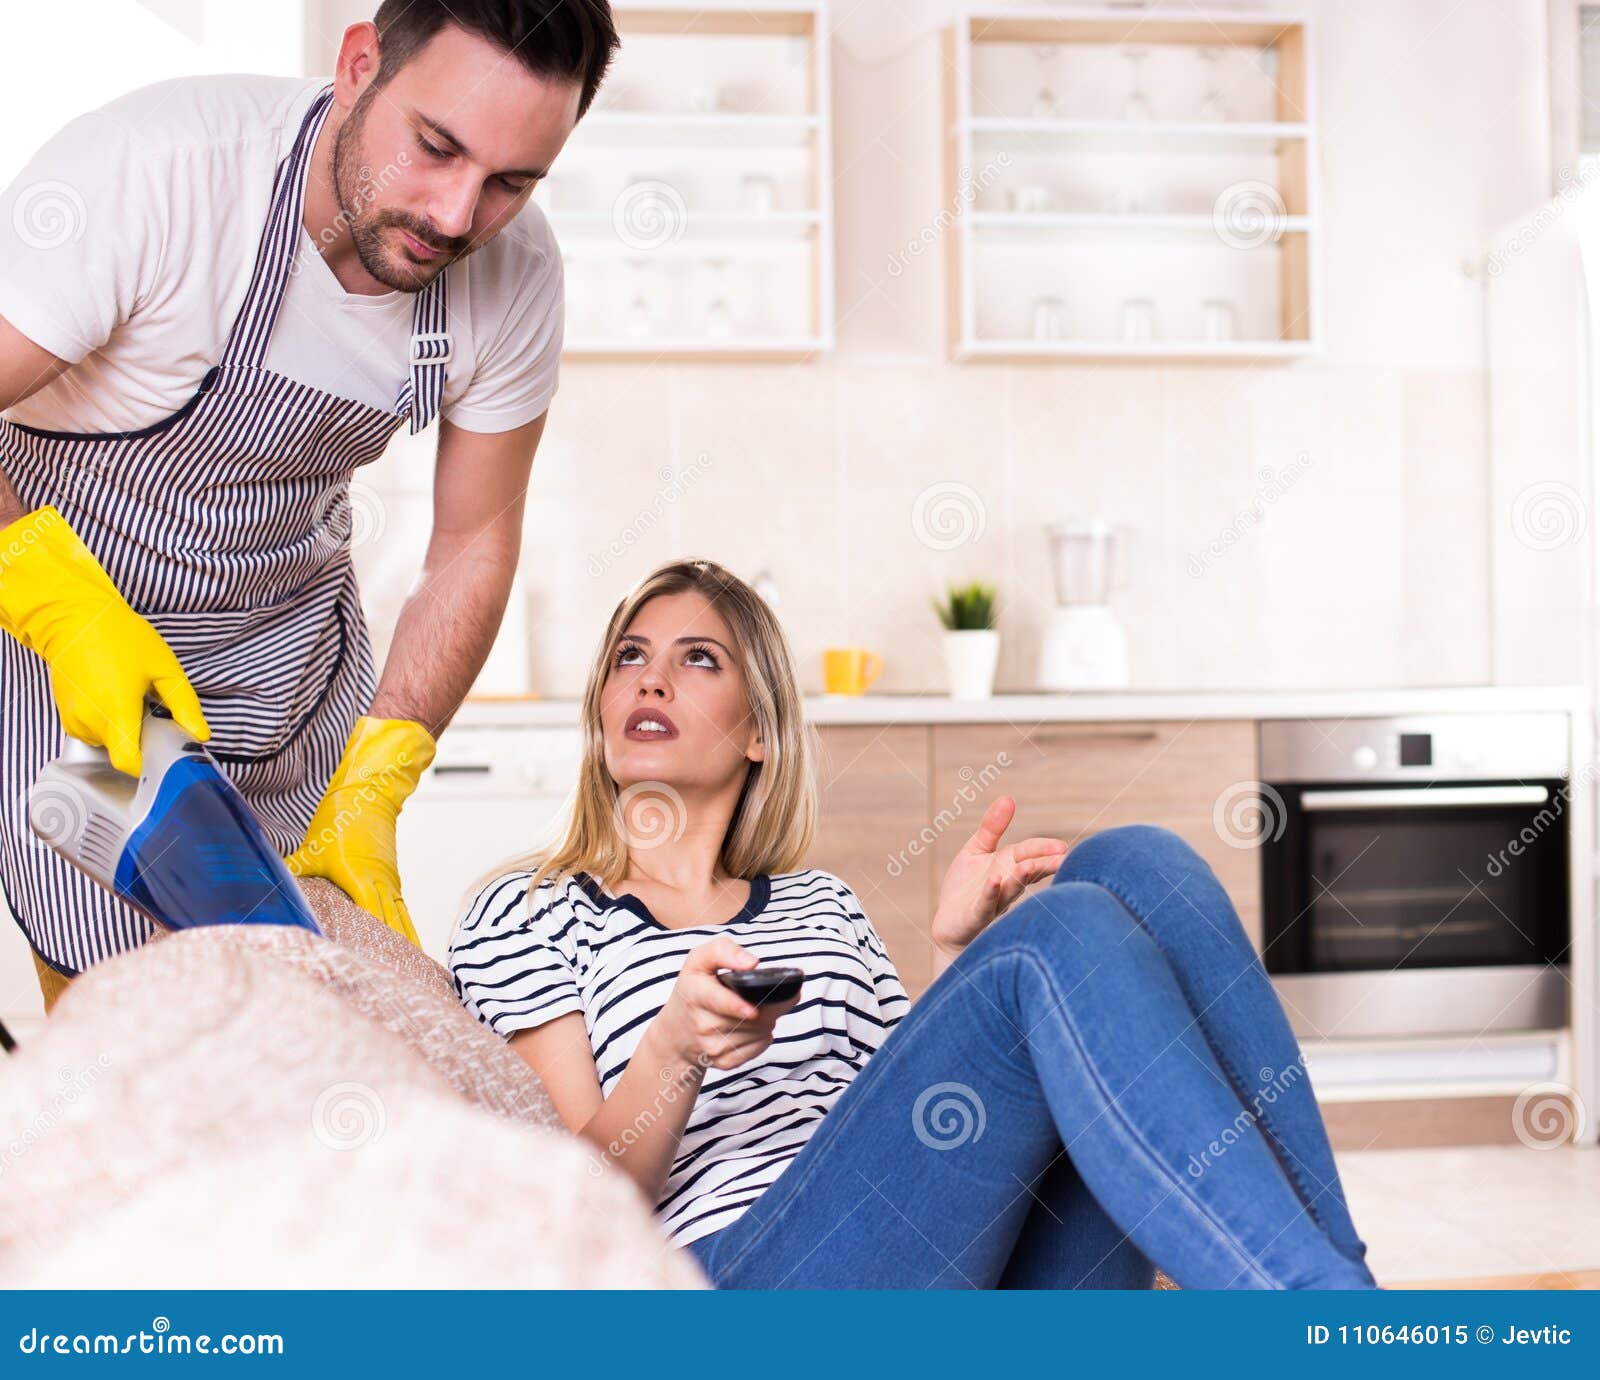 Зрелый муж помогает. Что делает муж по дому. Мужчина что делать дома после работы. Мужчина зарабатывает.женщина сидит дома. Man doing housework.